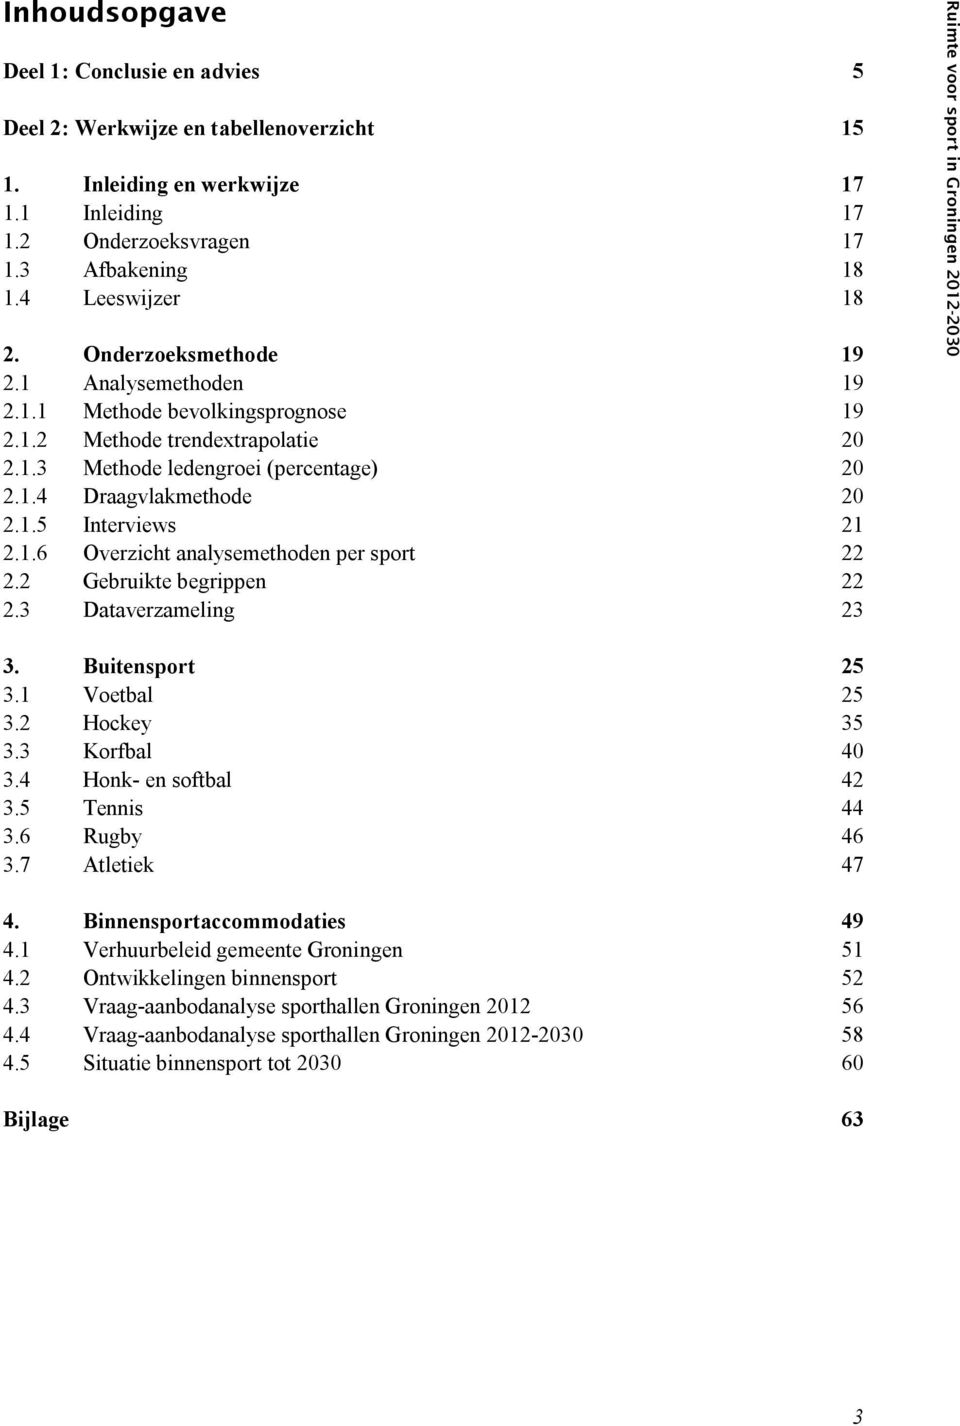 1.6 Overzicht analysemethoden per sport 22 2.2 Gebruikte begrippen 22 2.3 Dataverzameling 23 Ruimte voor sport in Groningen 2012-2030 3. Buitensport 25 3.1 Voetbal 25 3.2 Hockey 35 3.3 Korfbal 40 3.